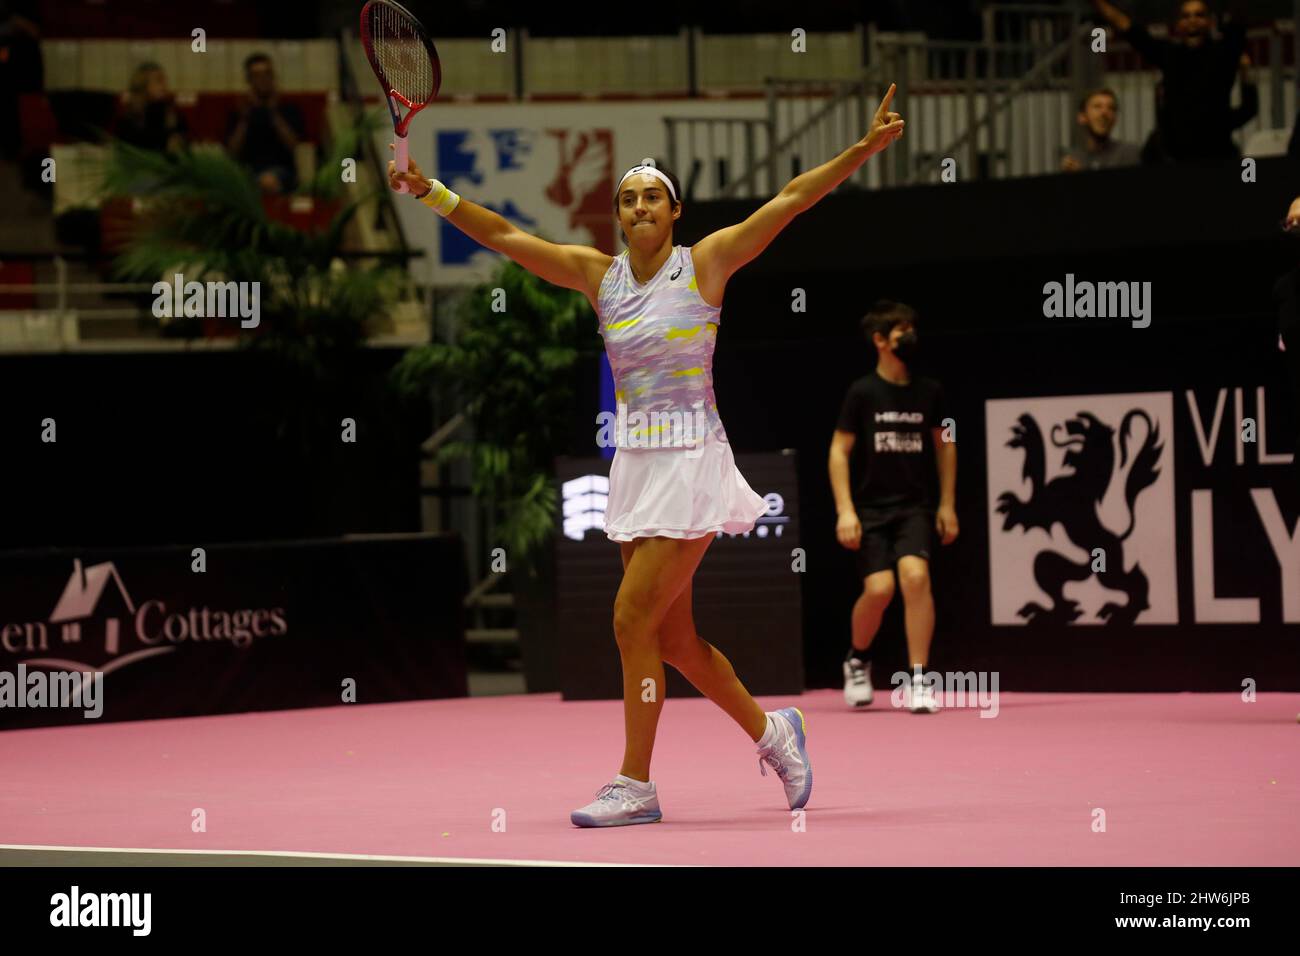 Caroline GARCIA (FRA) during the Open 6ème Sens, Métropole de Lyon 2022, WTA  250 tennis tournament